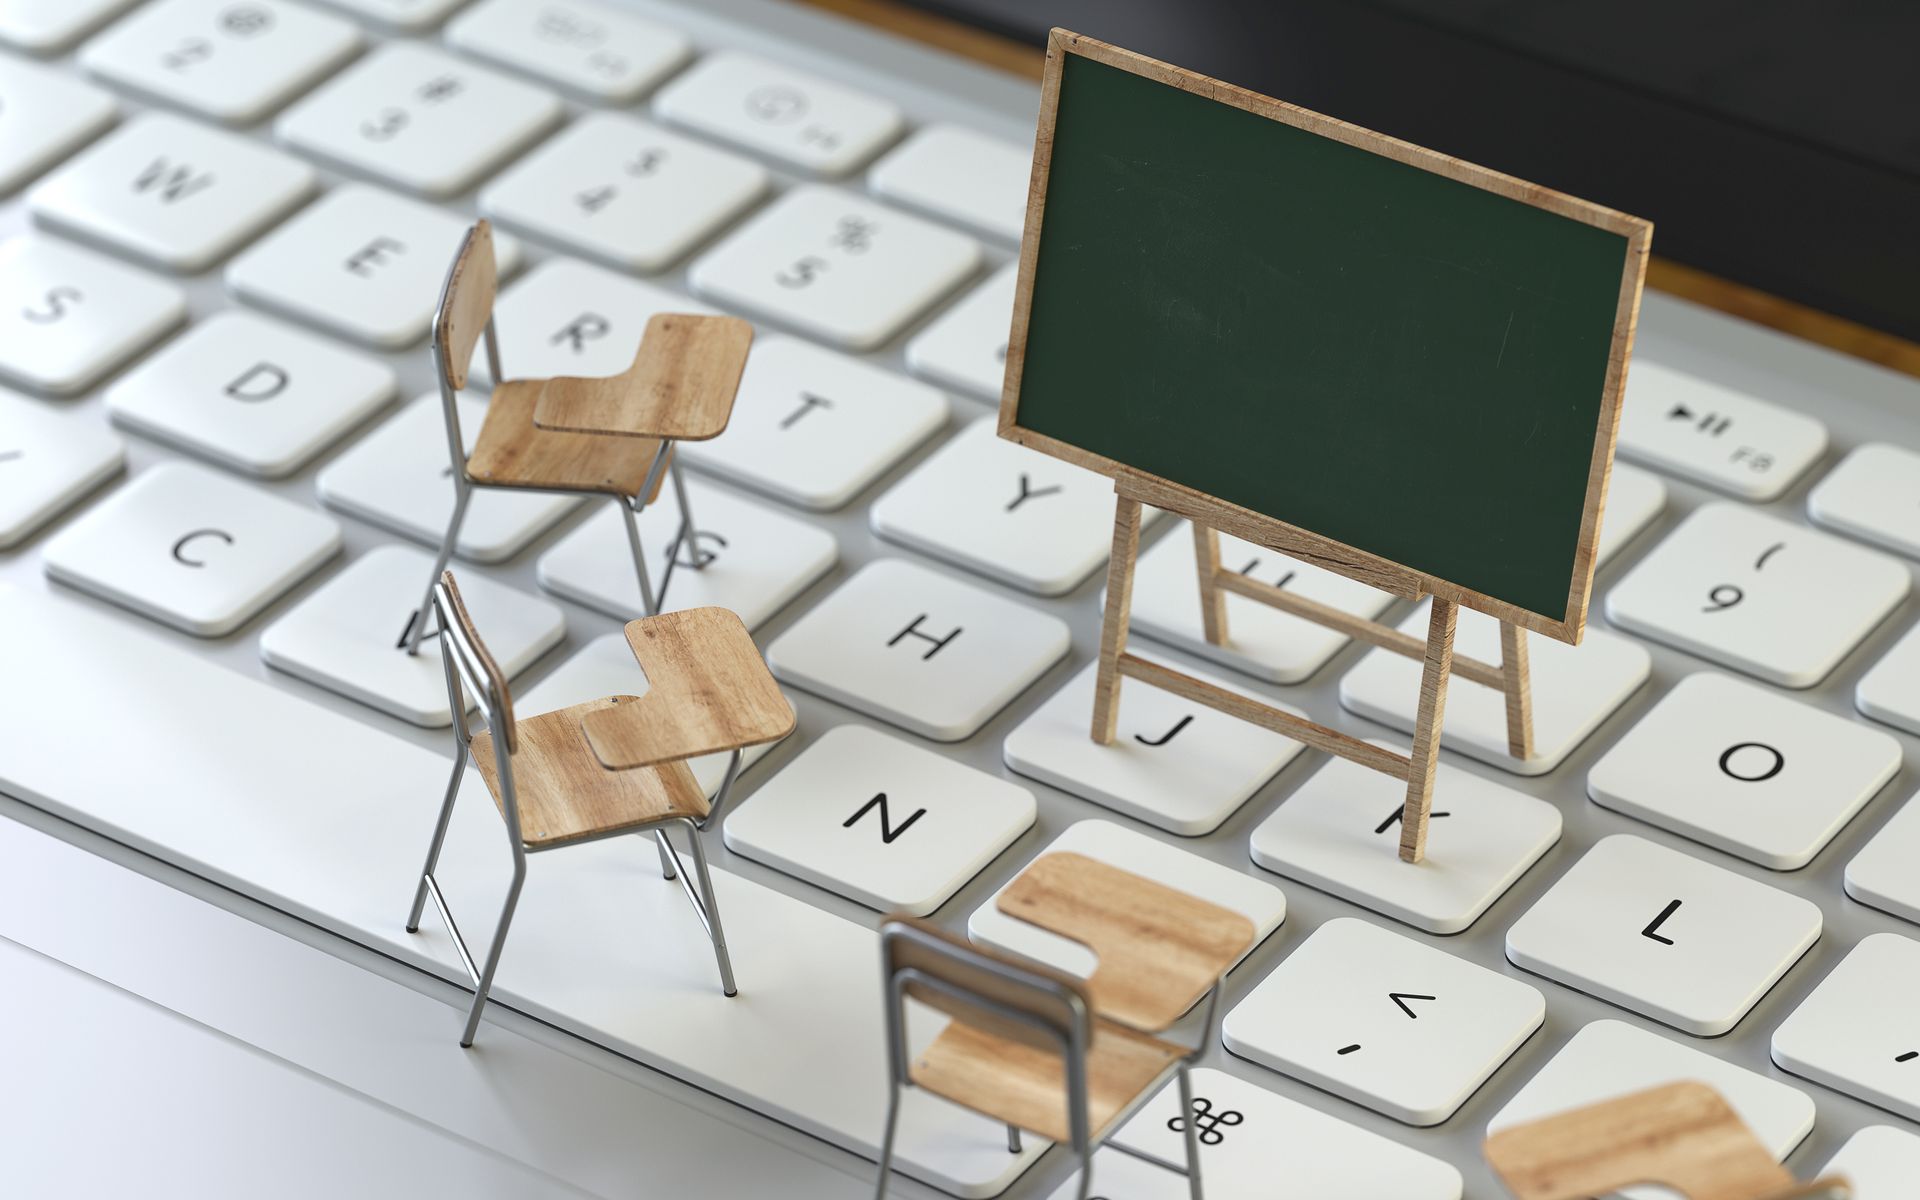 Foto von einer Tastatur, auf der Miniaturmodelle von einer Kreidetafel und Stühlen stehen.